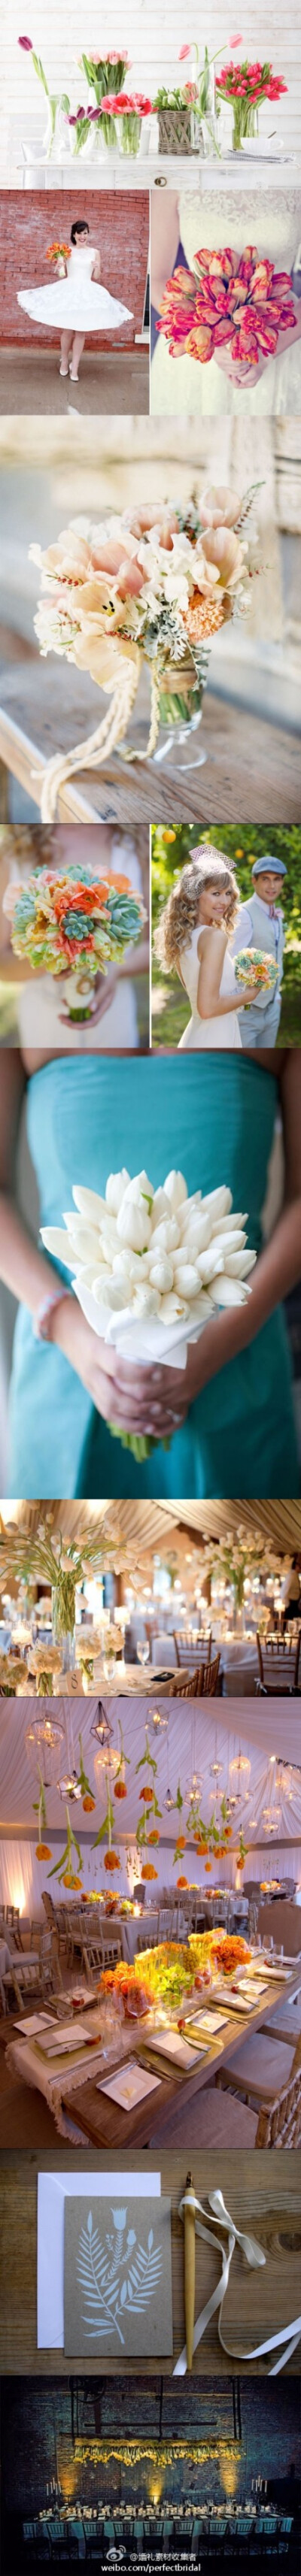 郁金香打造的婚礼布置花艺